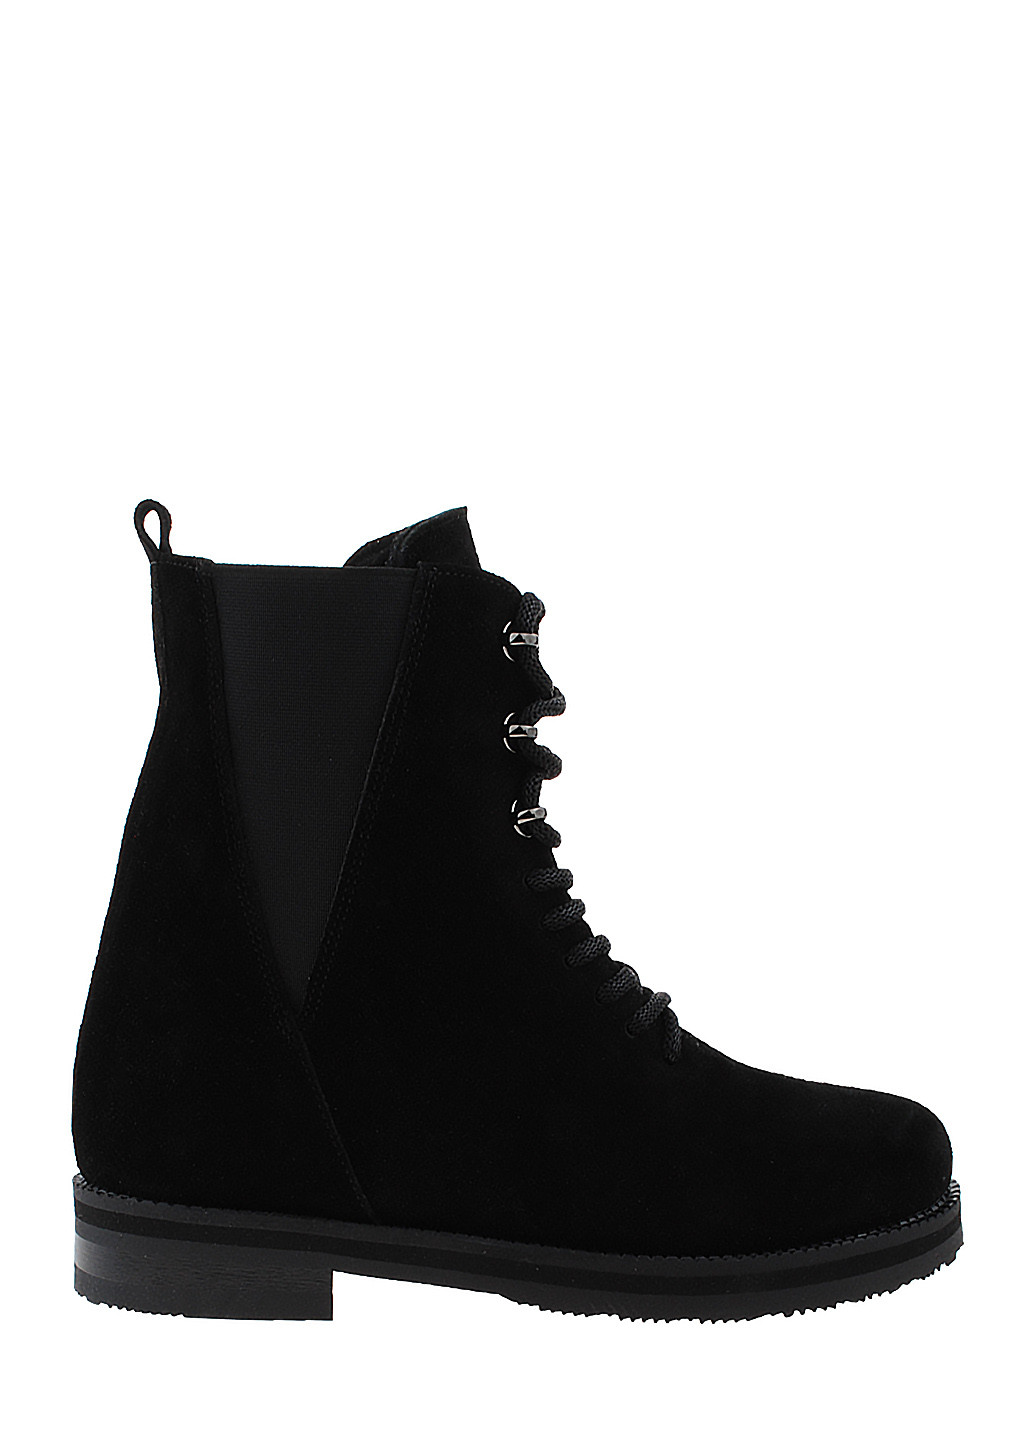 Зимние ботинки r321-456-11 черный Arcoboletto из натуральной замши